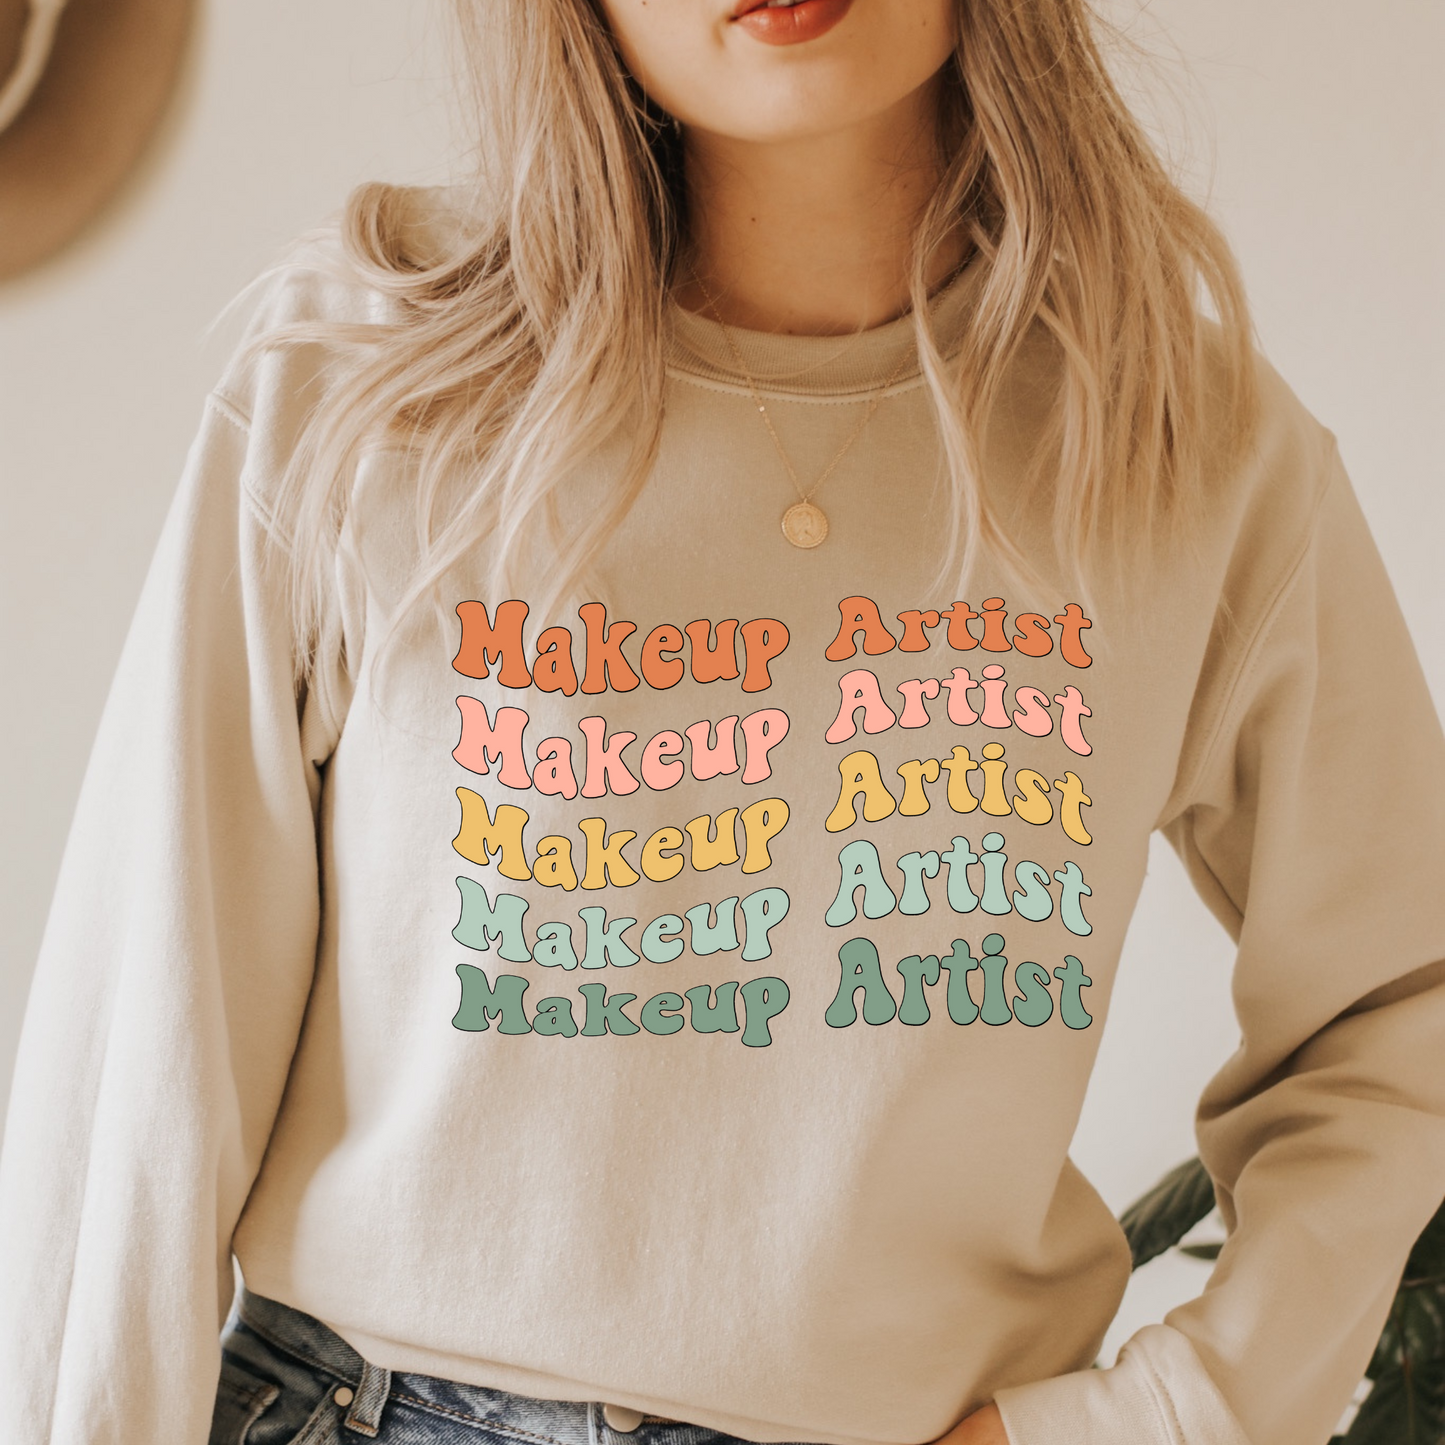 Trendy Makeup Artist Sweatshirt, Retro MUA crewneck, MUA gift, Cute Makeup Artist Gift, Makeup Lover gift, MUA apparel, Trendy Sweatshirt